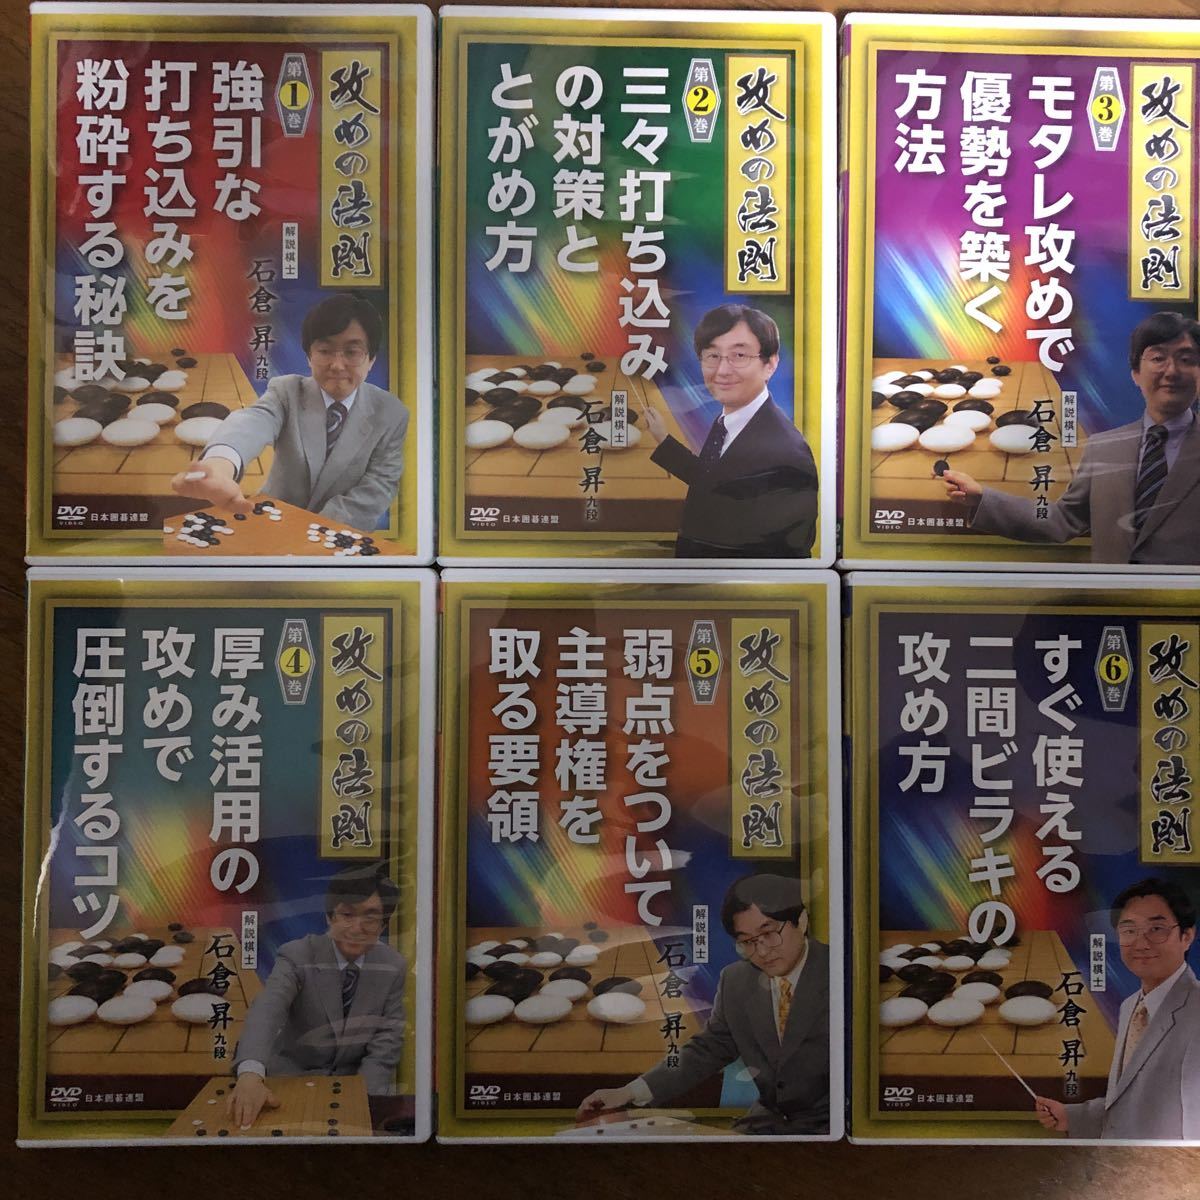 再入荷 囲碁DVD 日本囲碁連盟 石倉昇 攻めの法則 DVD6巻セット - その他 - hlt.no